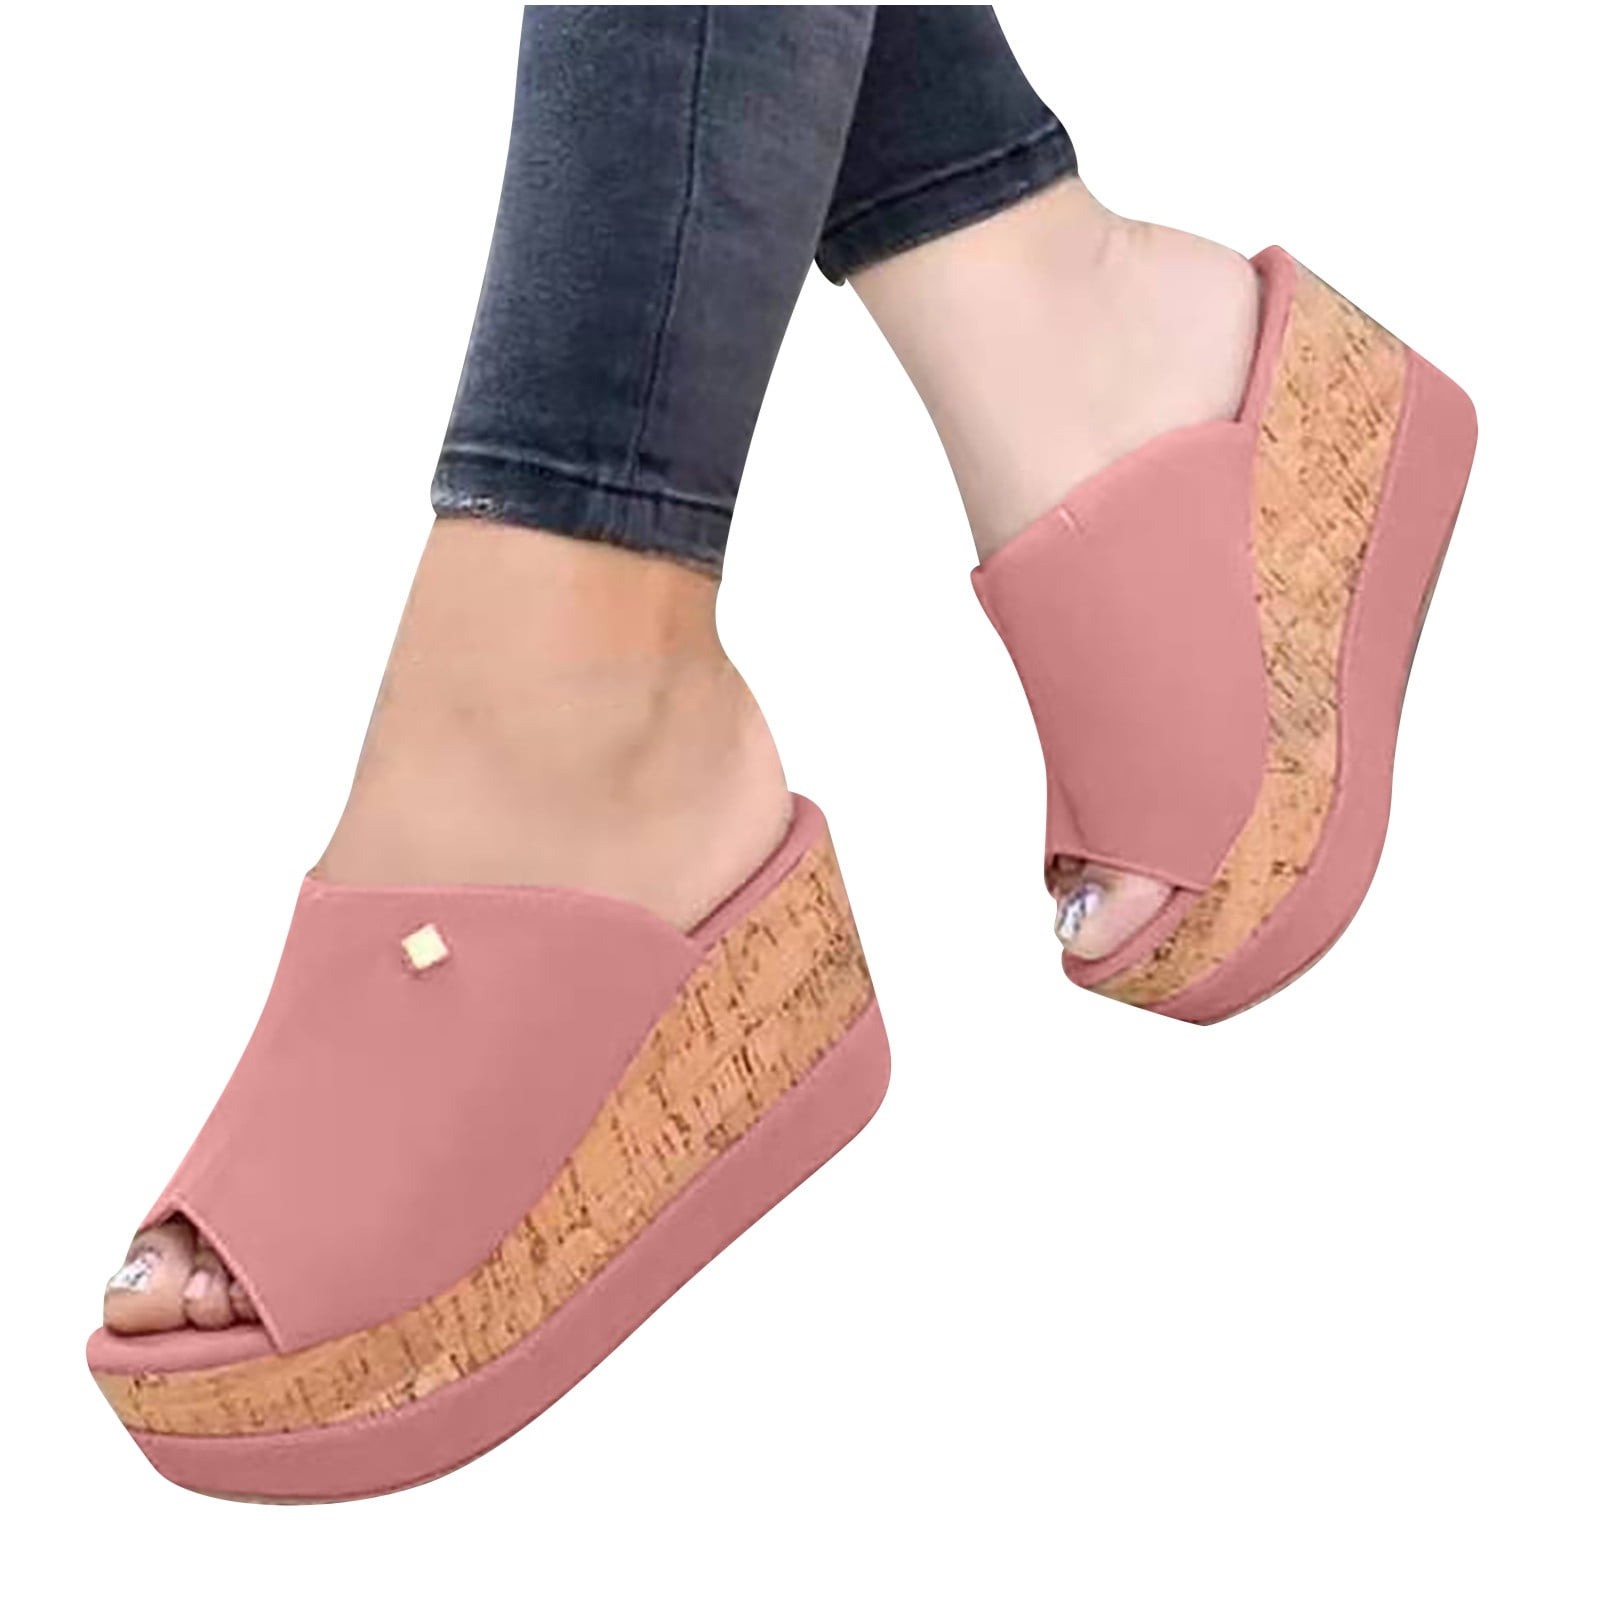 Heels For Women - Buy Heels For Women Online Starting at Just ₹162 | Meesho